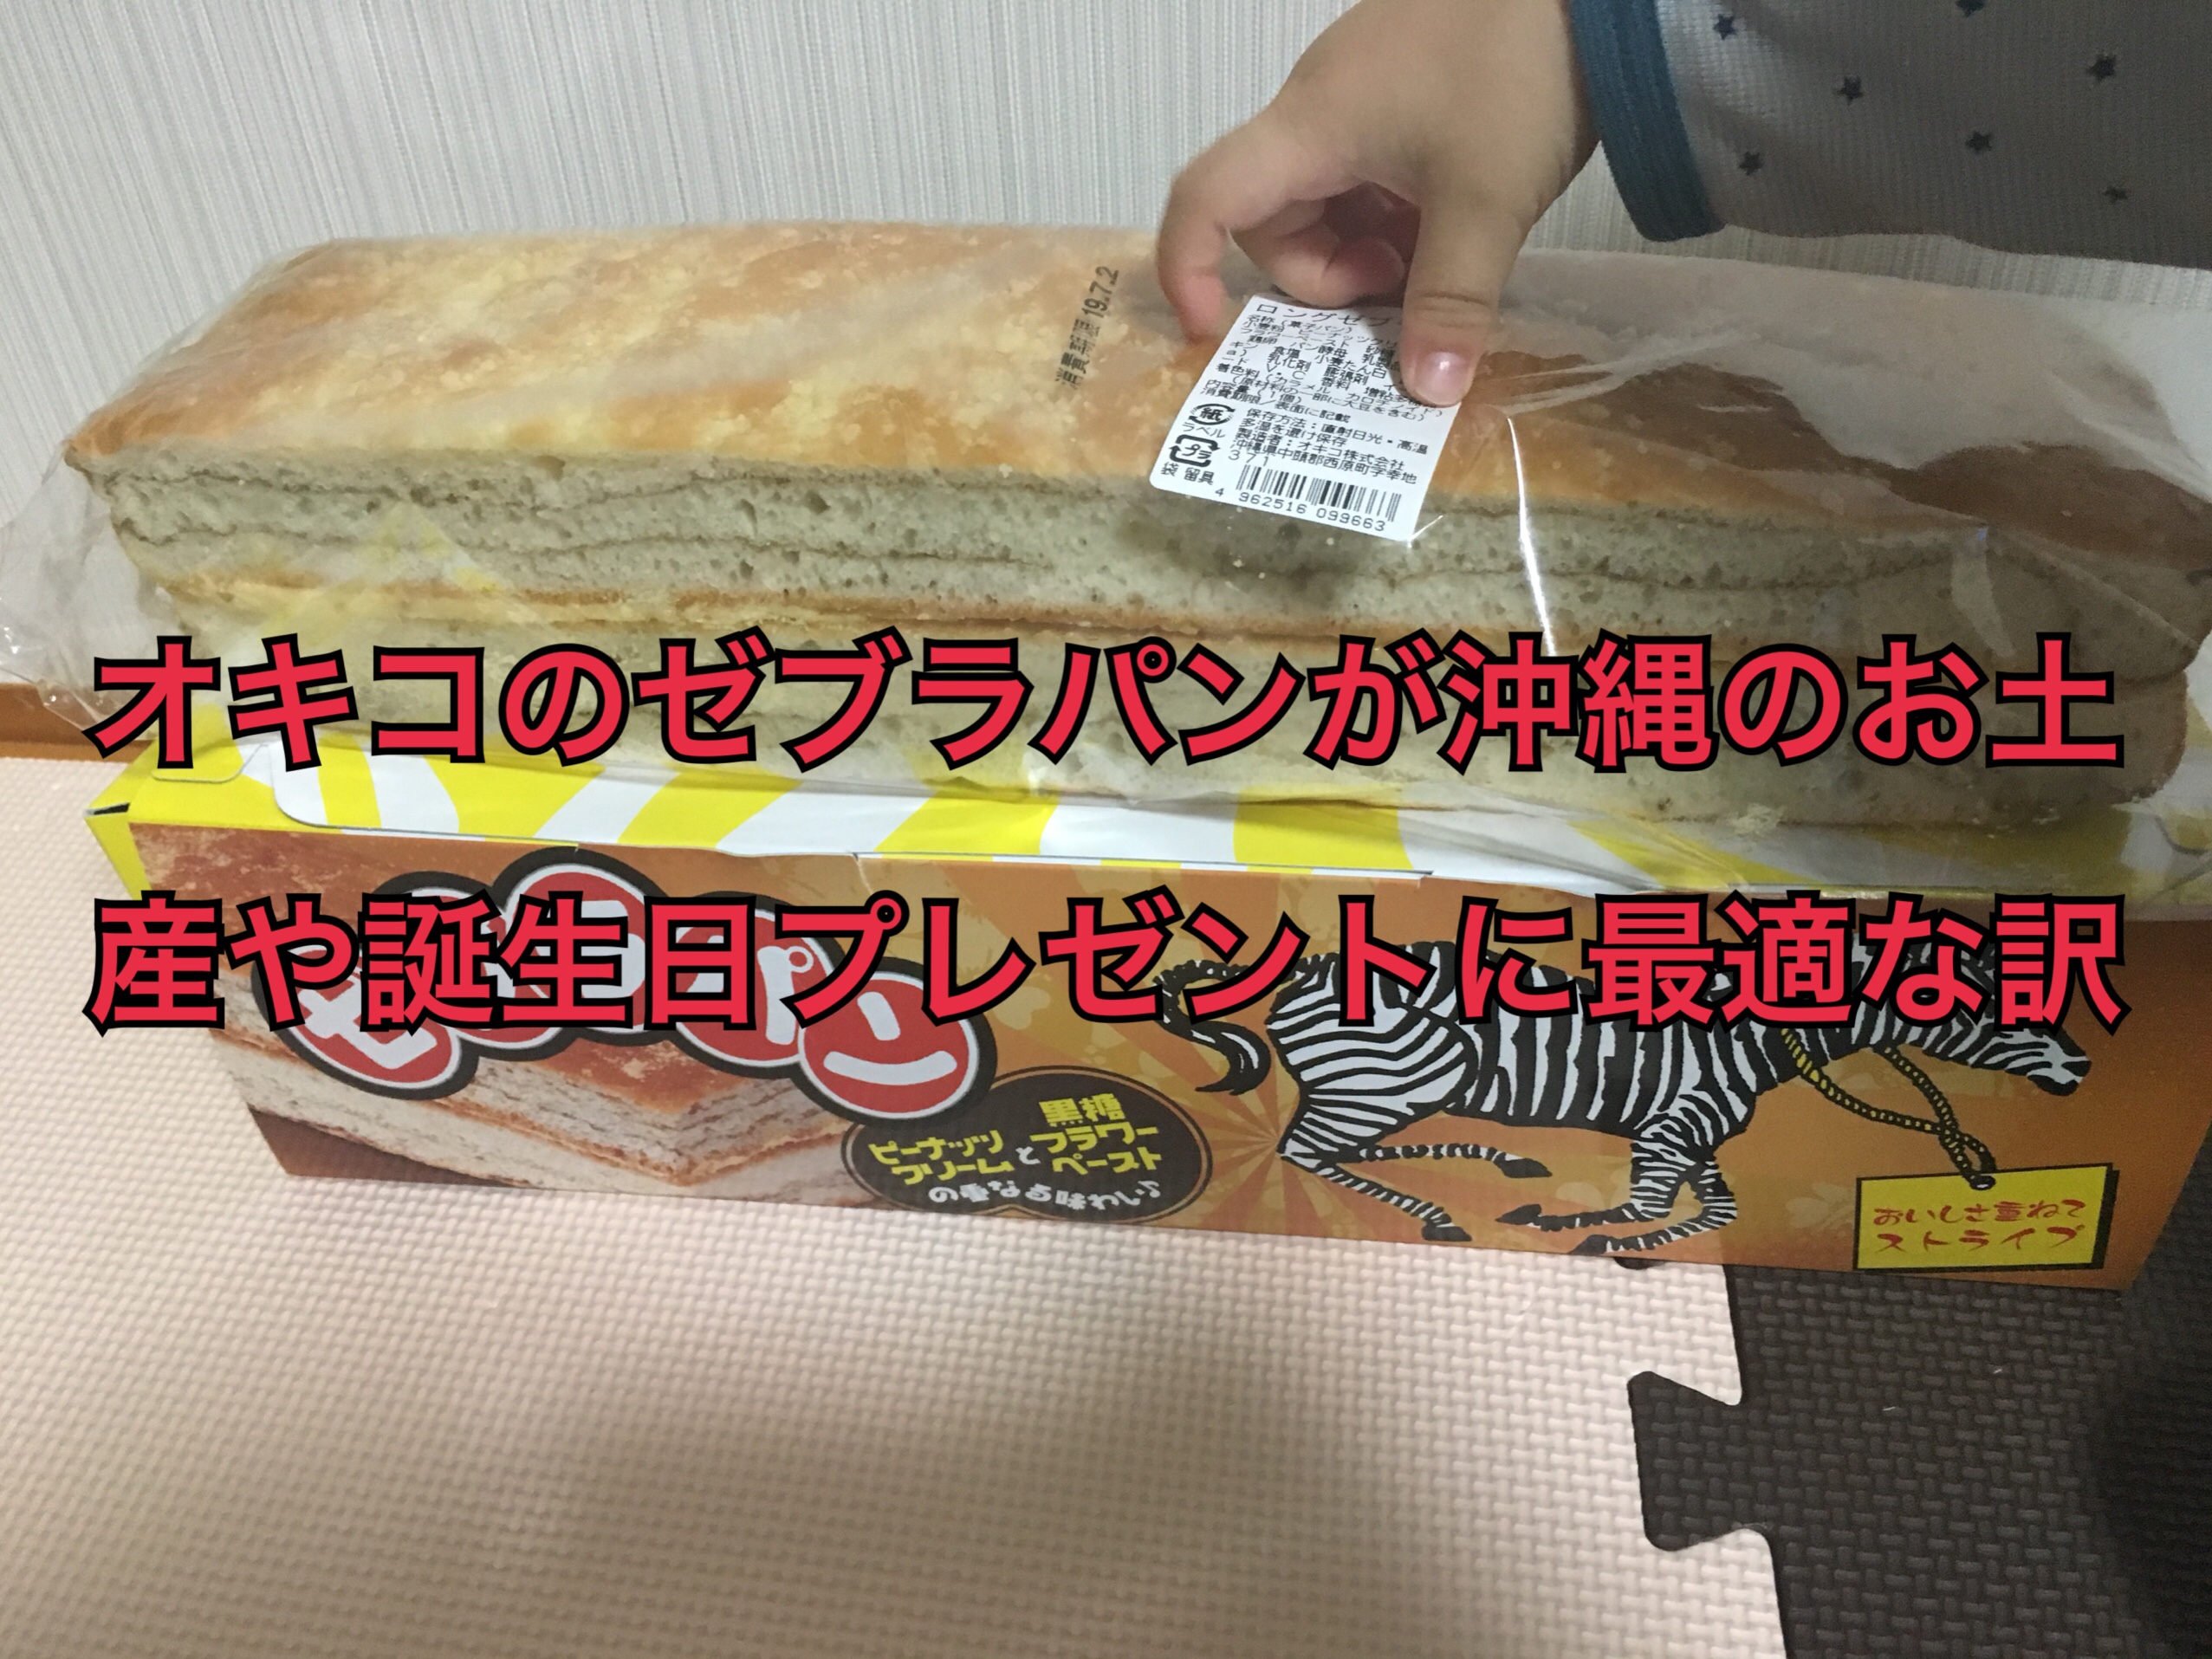 オキコのゼブラパンが沖縄のお土産や誕生日プレゼントに最適な訳 気ままに沖縄ライフ